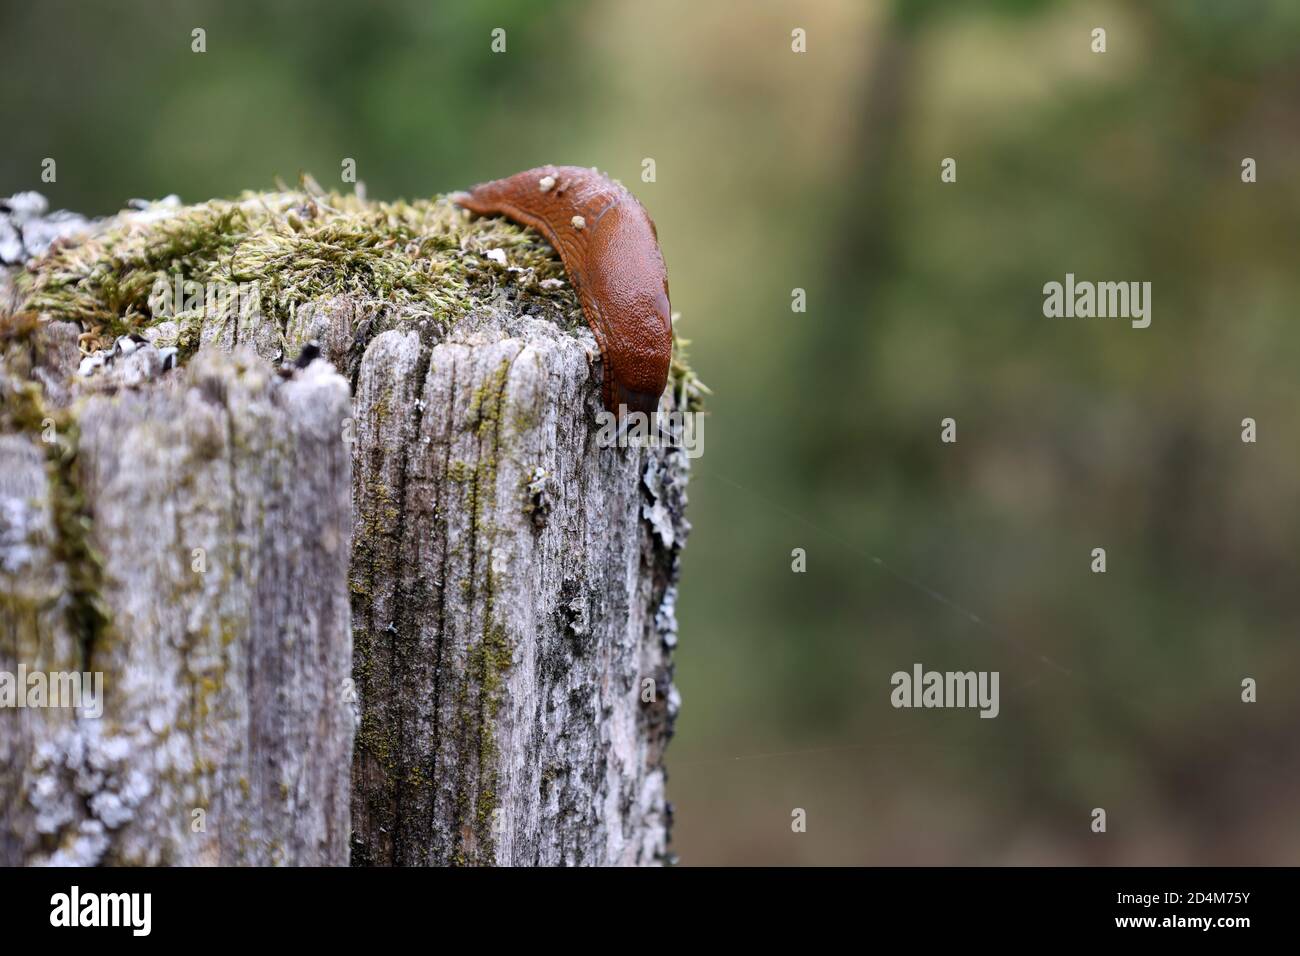 A slug creeps slowly in the garden Stock Photo